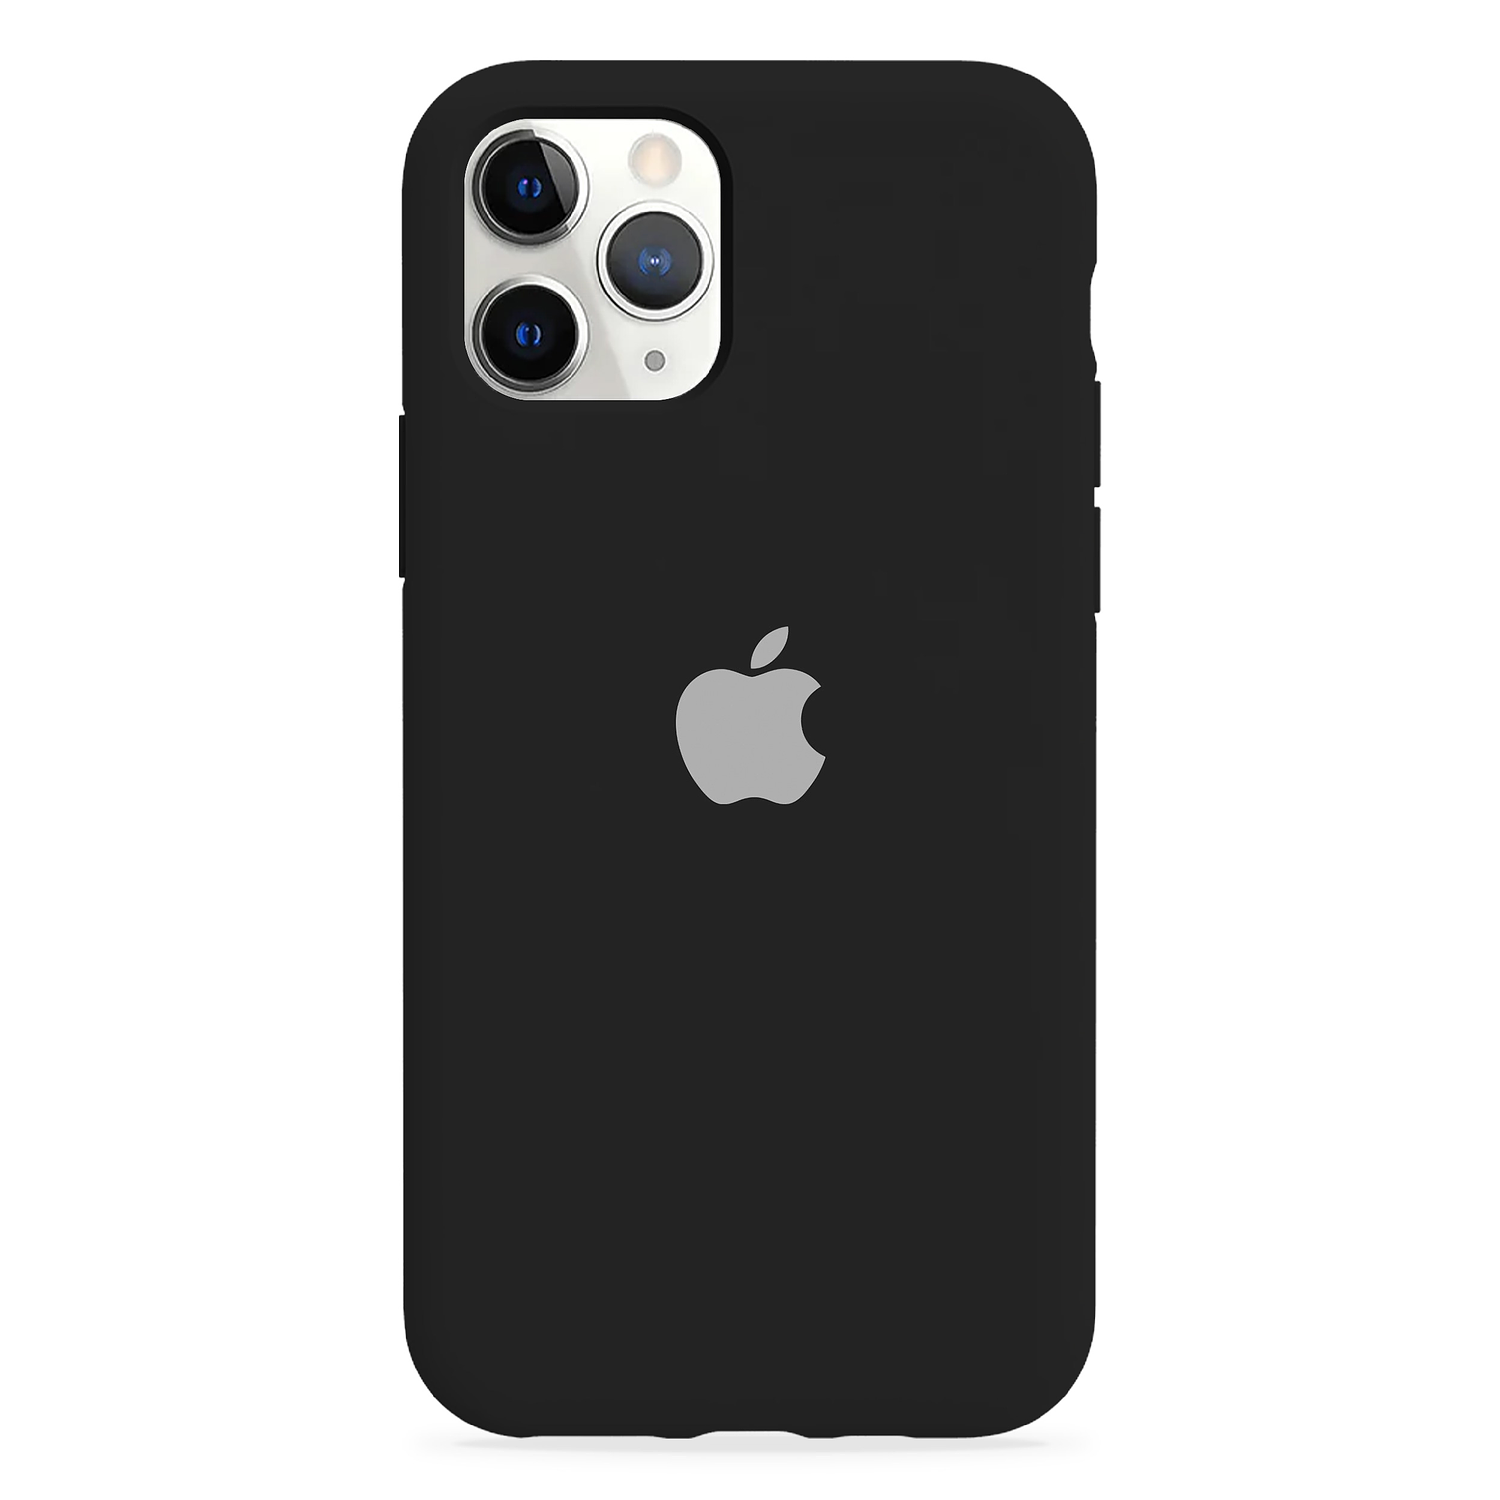 Carcasa de Silicona - iPhone 11 Pro (Colores)